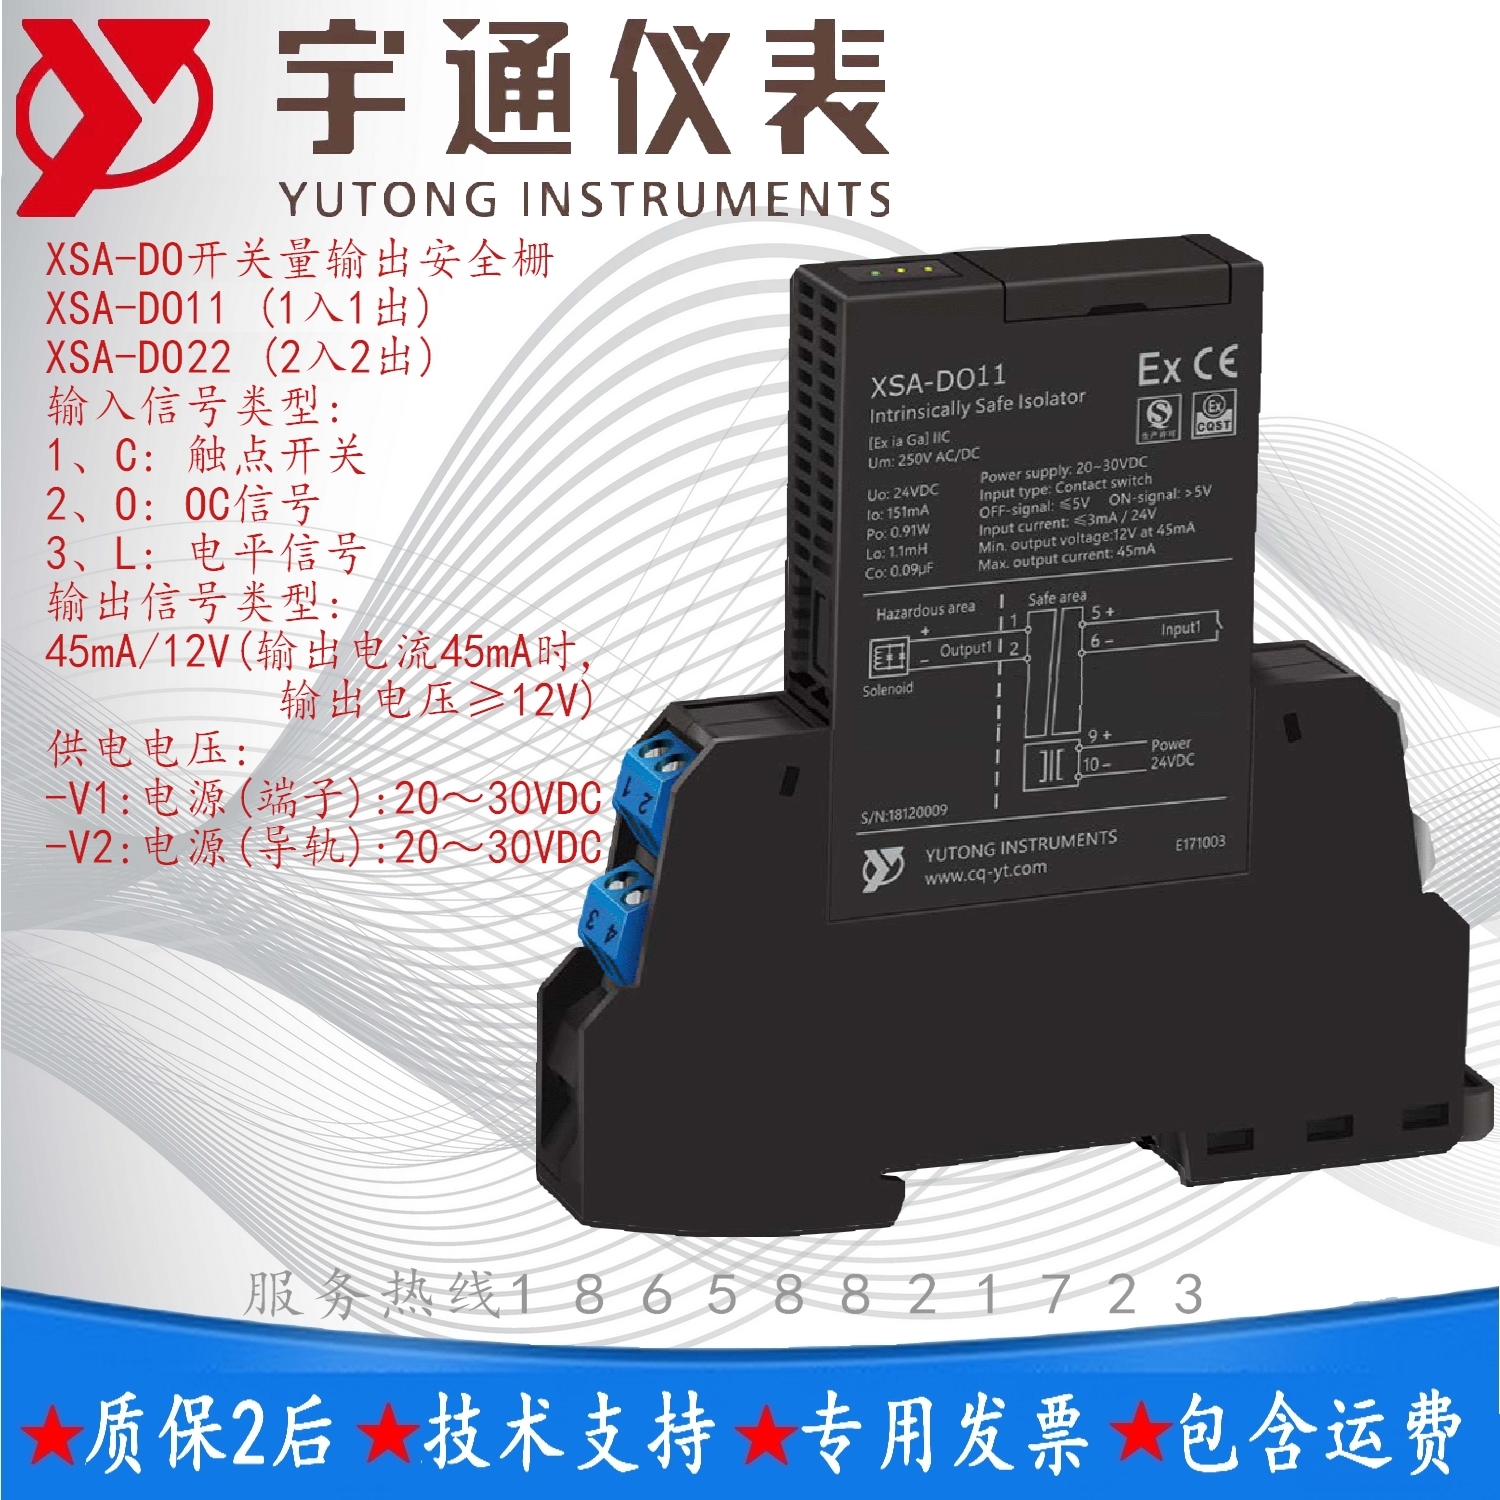 宇通XSA-DO11-CE-V1开关量输出安全栅1入1出 输出45mA/12V或指定 宇通XSA-DO11安全栅图片